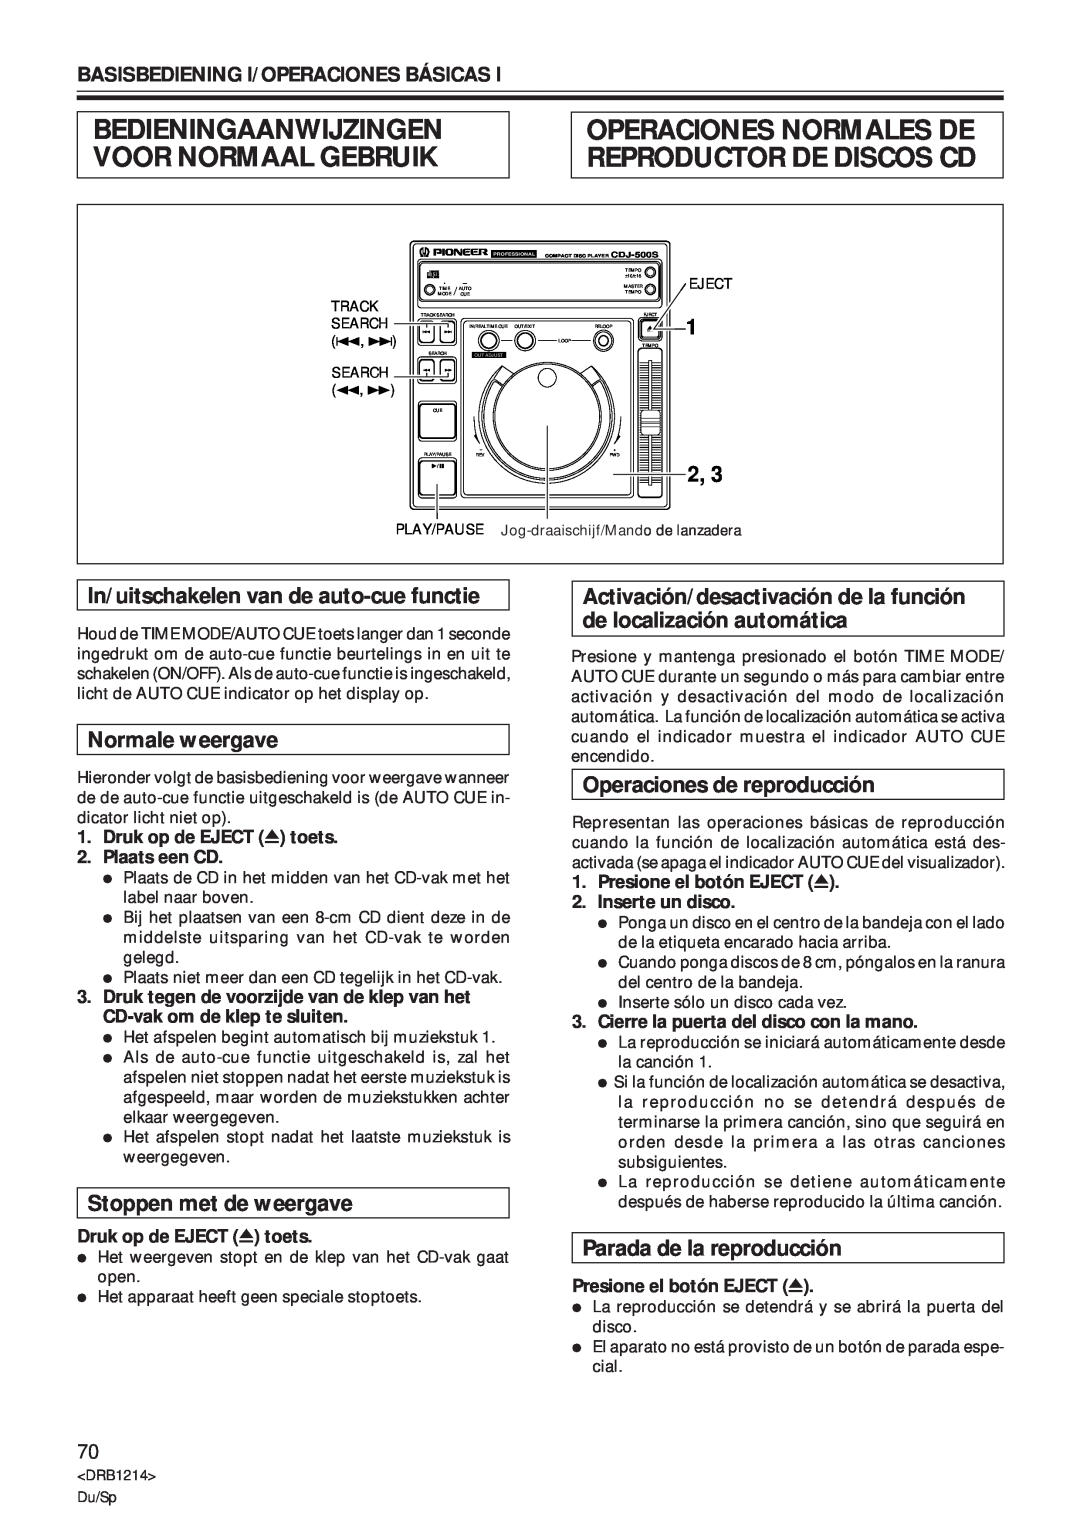 Pioneer CDJ-500S Bedieningaanwijzingen Voor Normaal Gebruik, Operaciones Normales De Reproductor De Discos Cd, 1 2 